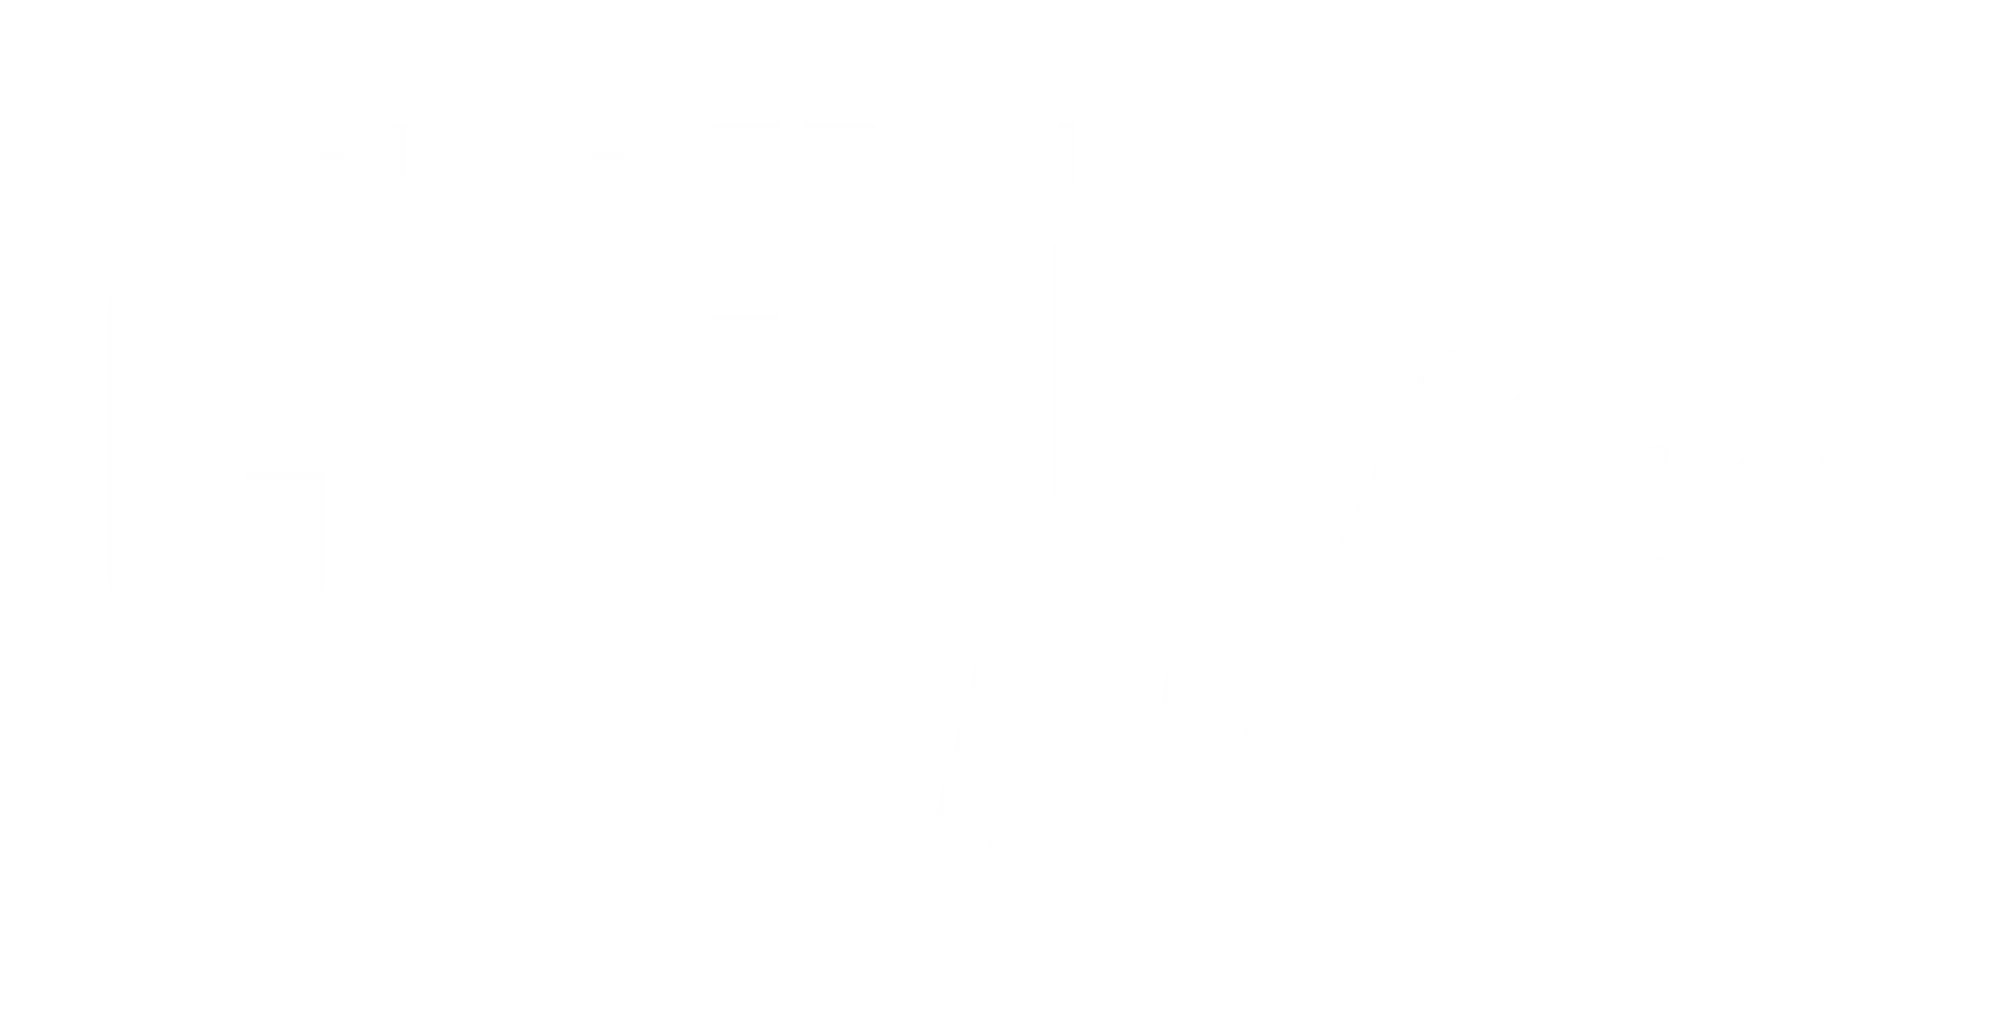 countwise kepler logo inverse